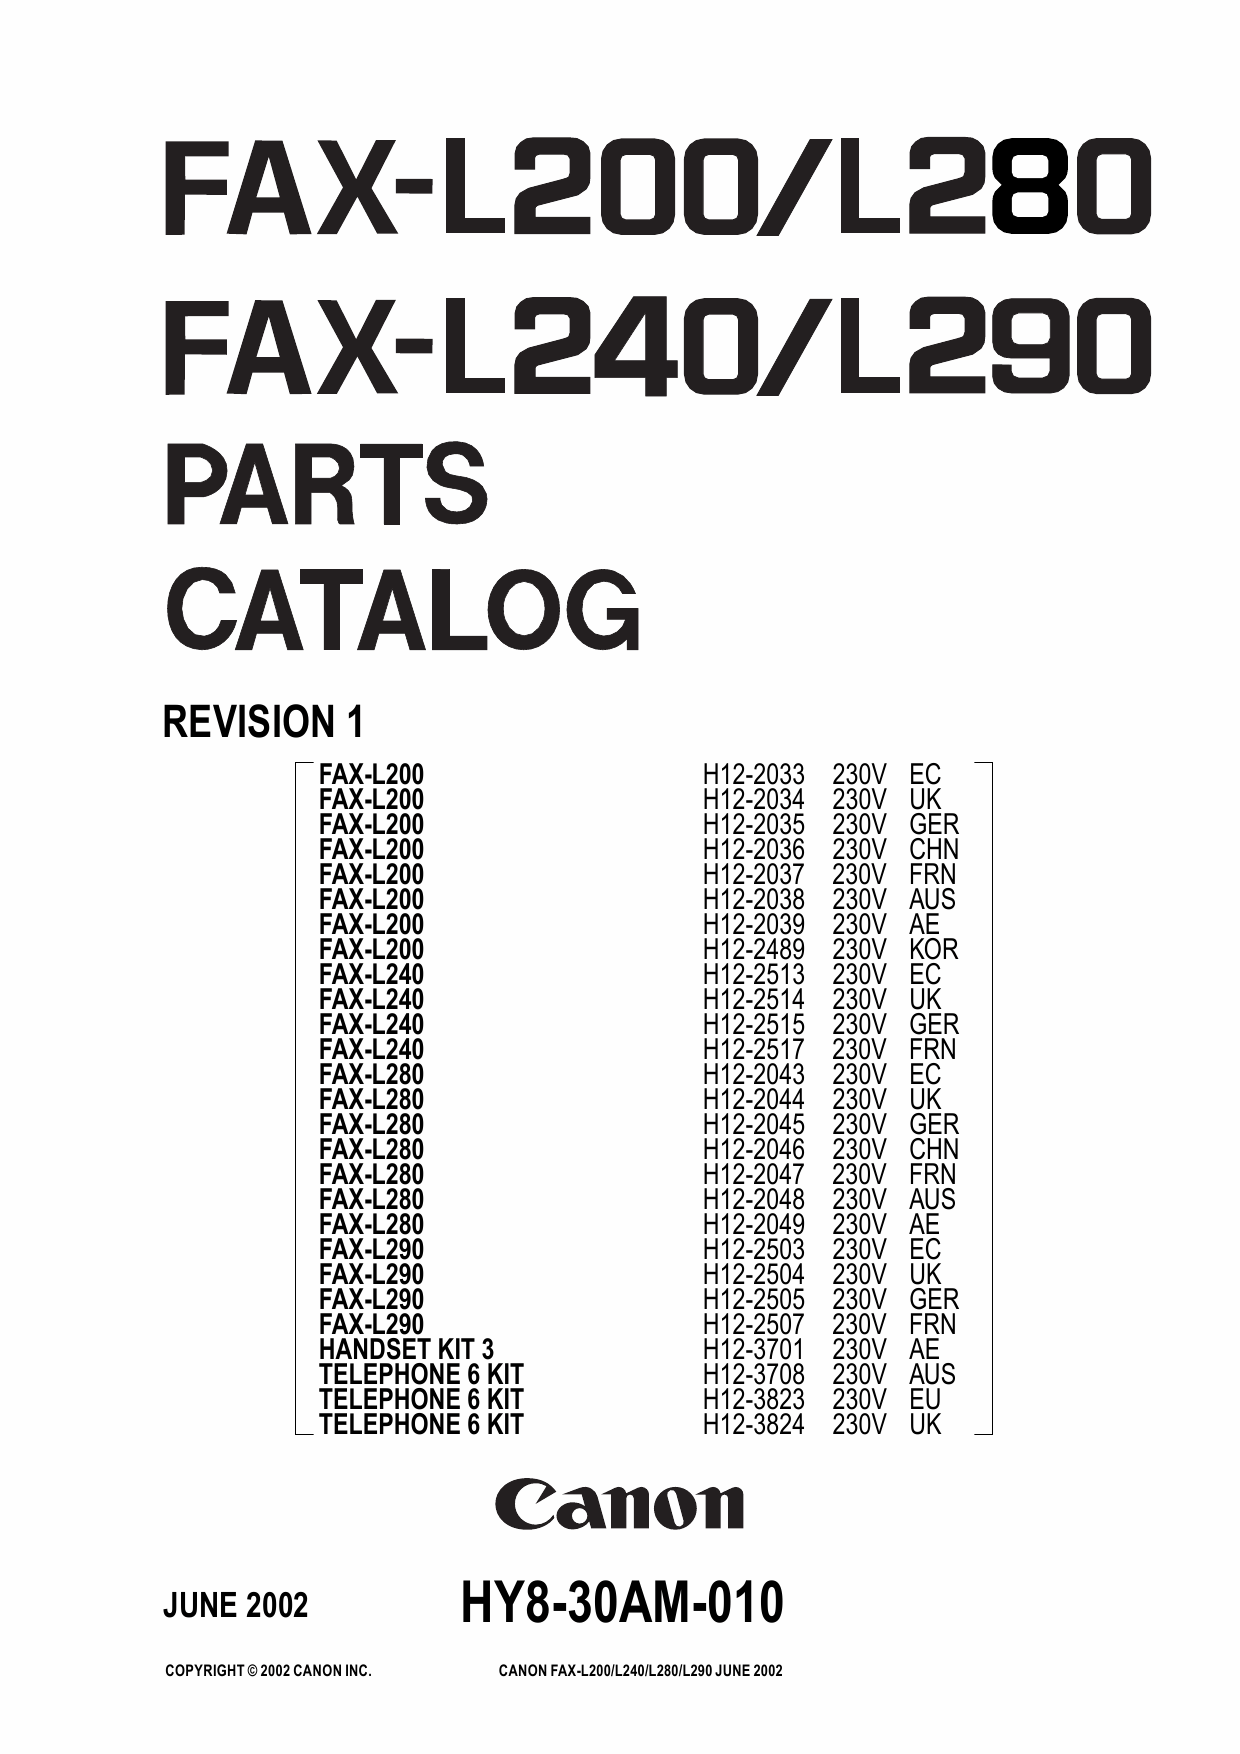 Canon FAX L280 Parts Catalog Manual-1